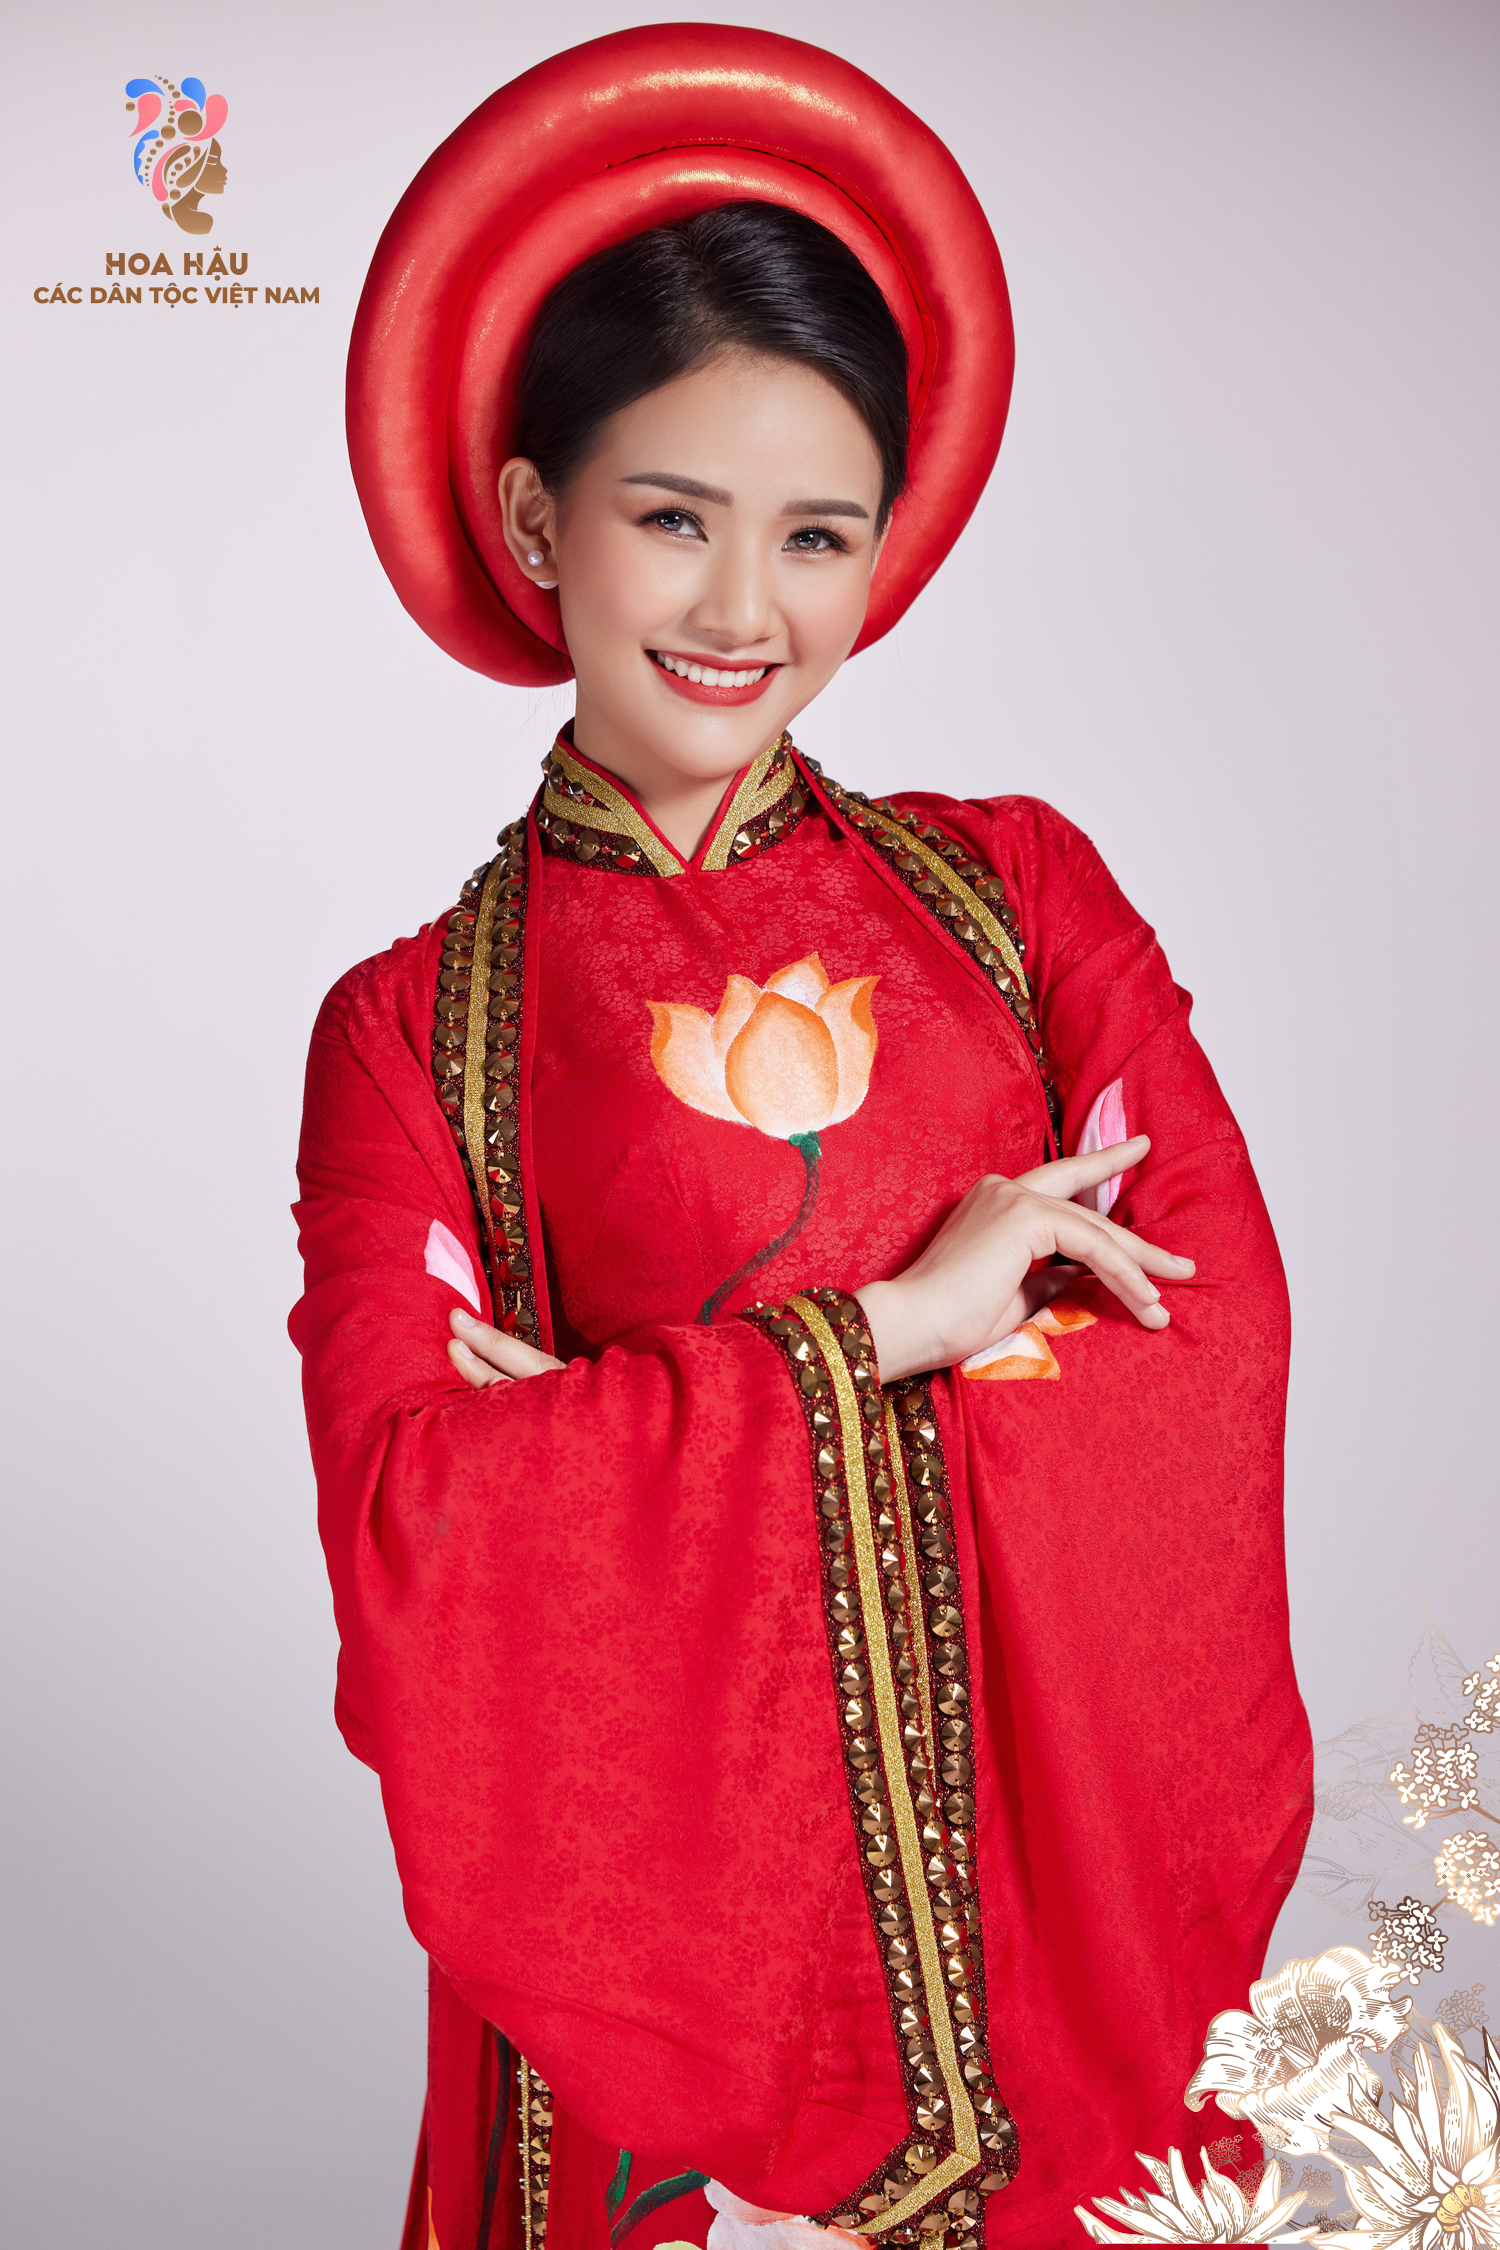 30 thí sinh Hoa hậu các dân tộc Việt Nam duyên dáng trong trang phục truyền thống - Ảnh 11.